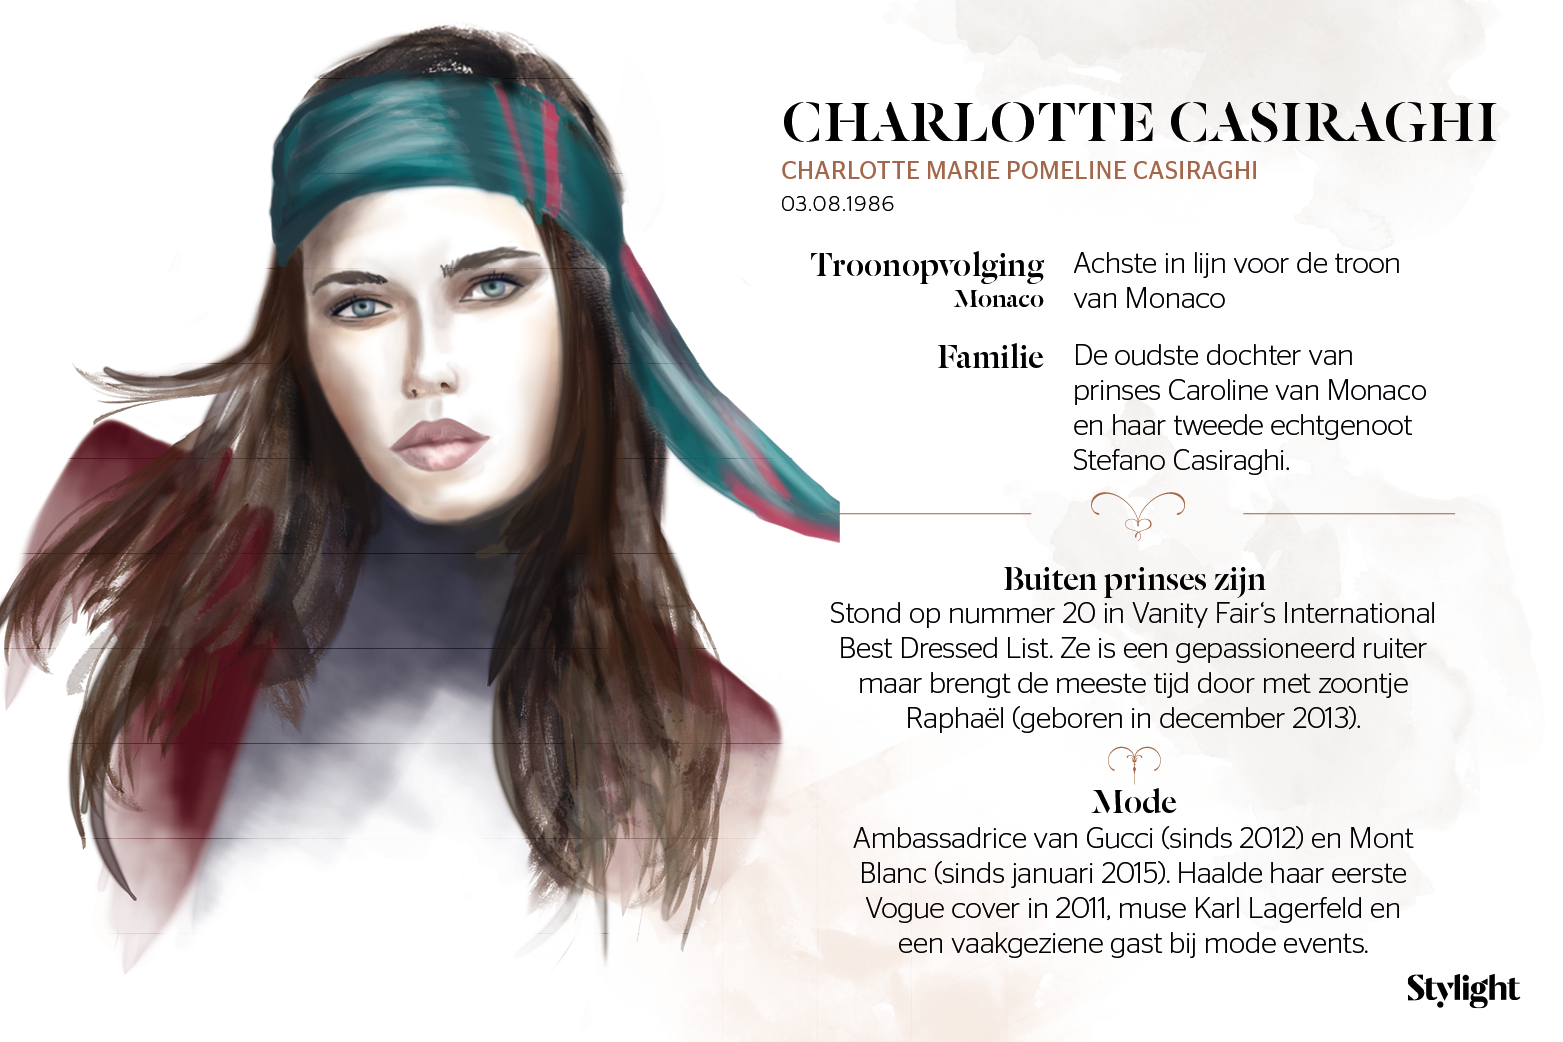 Stylight Charlotte Casiraghi style fashion